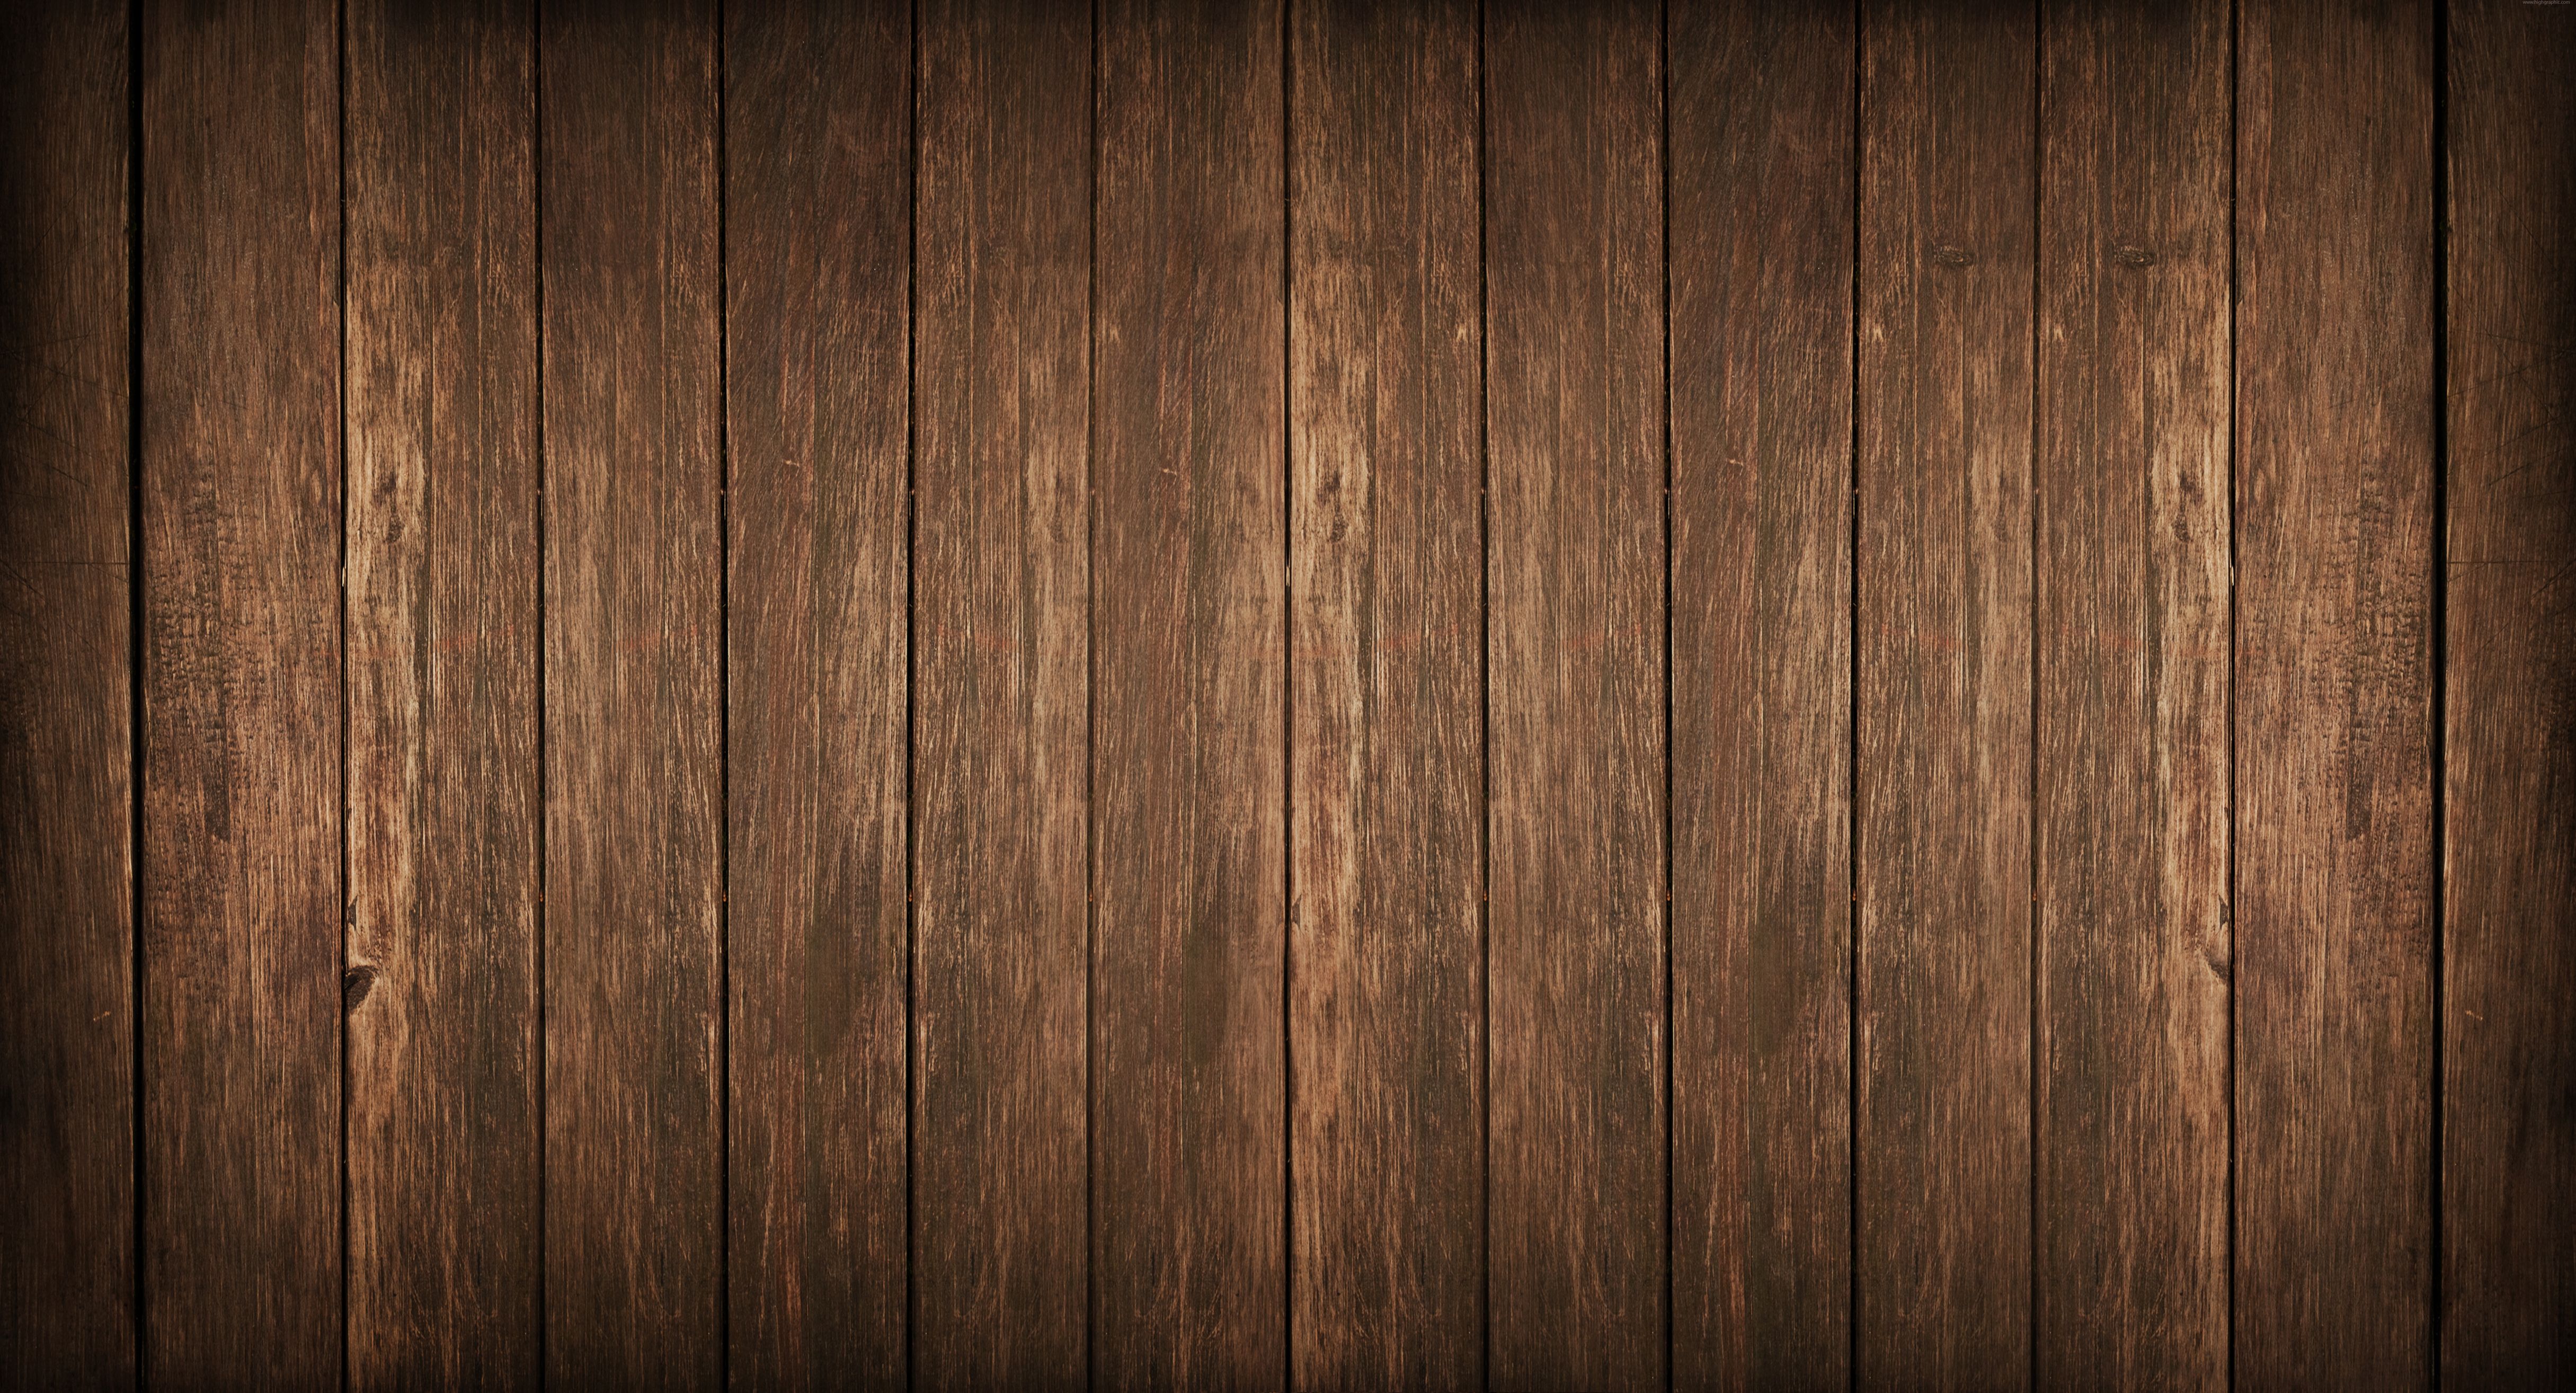 Wood panels background photo